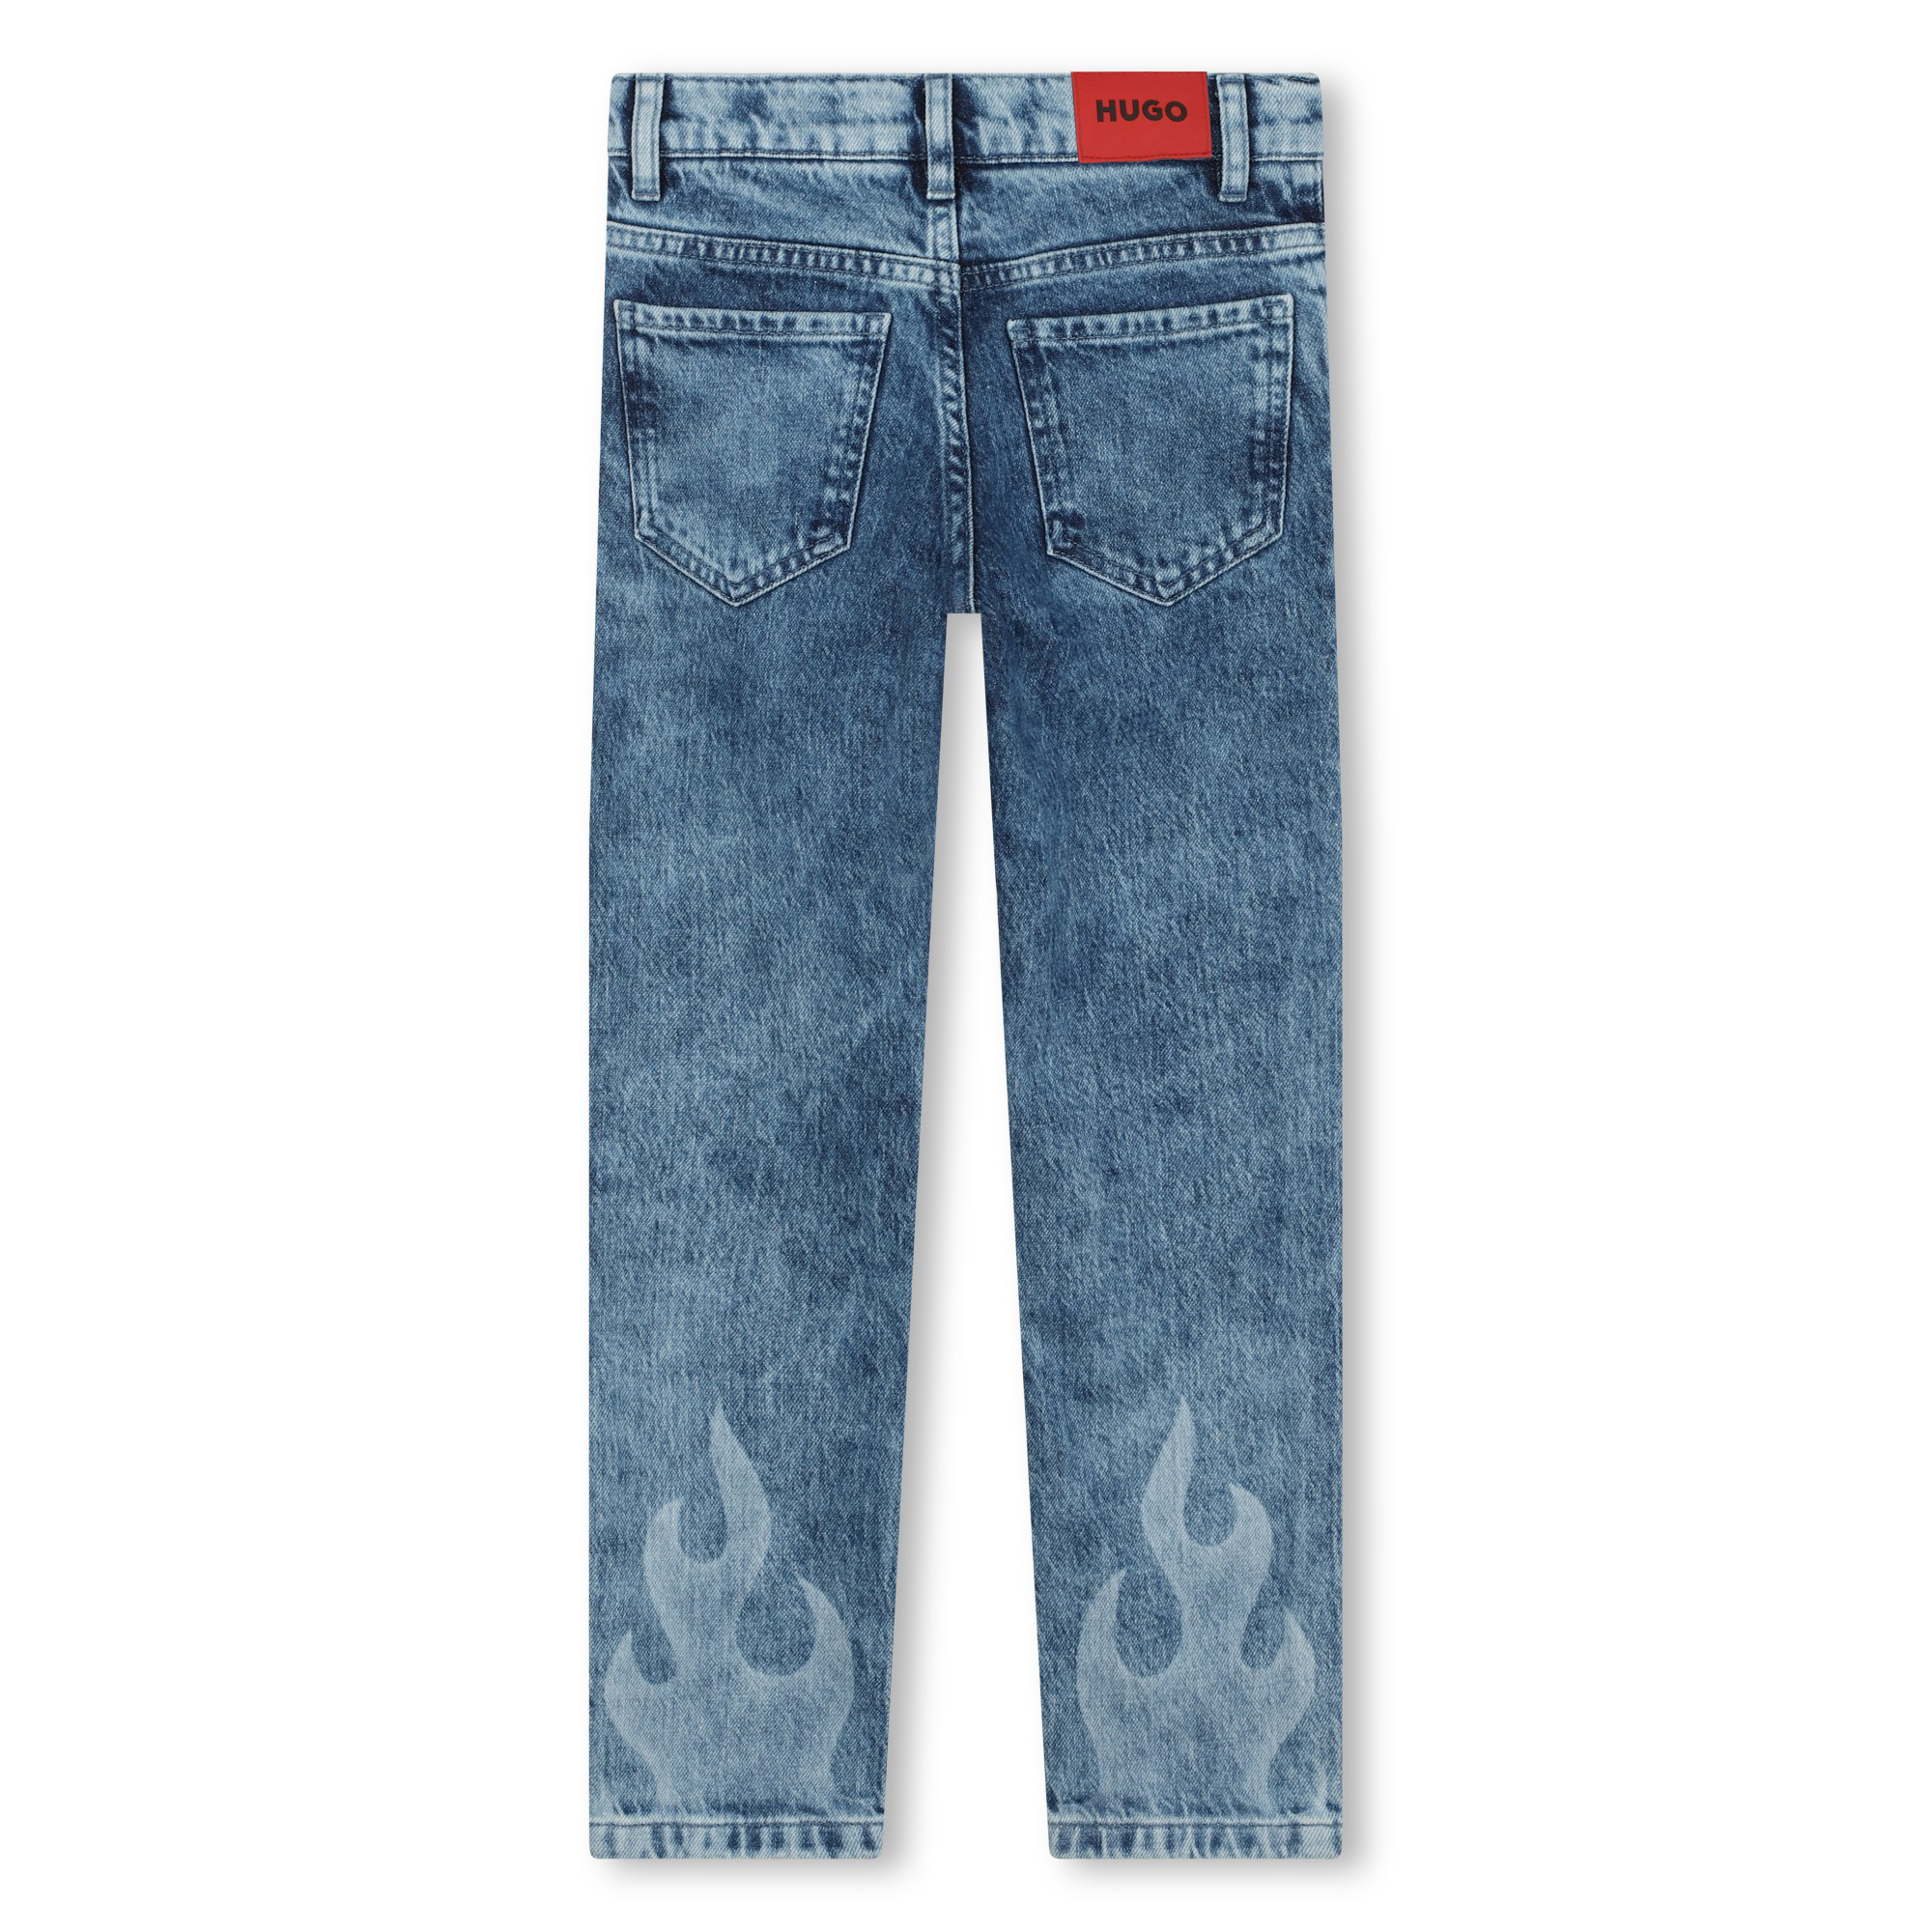 5-pocket jeans with motifs HUGO for BOY